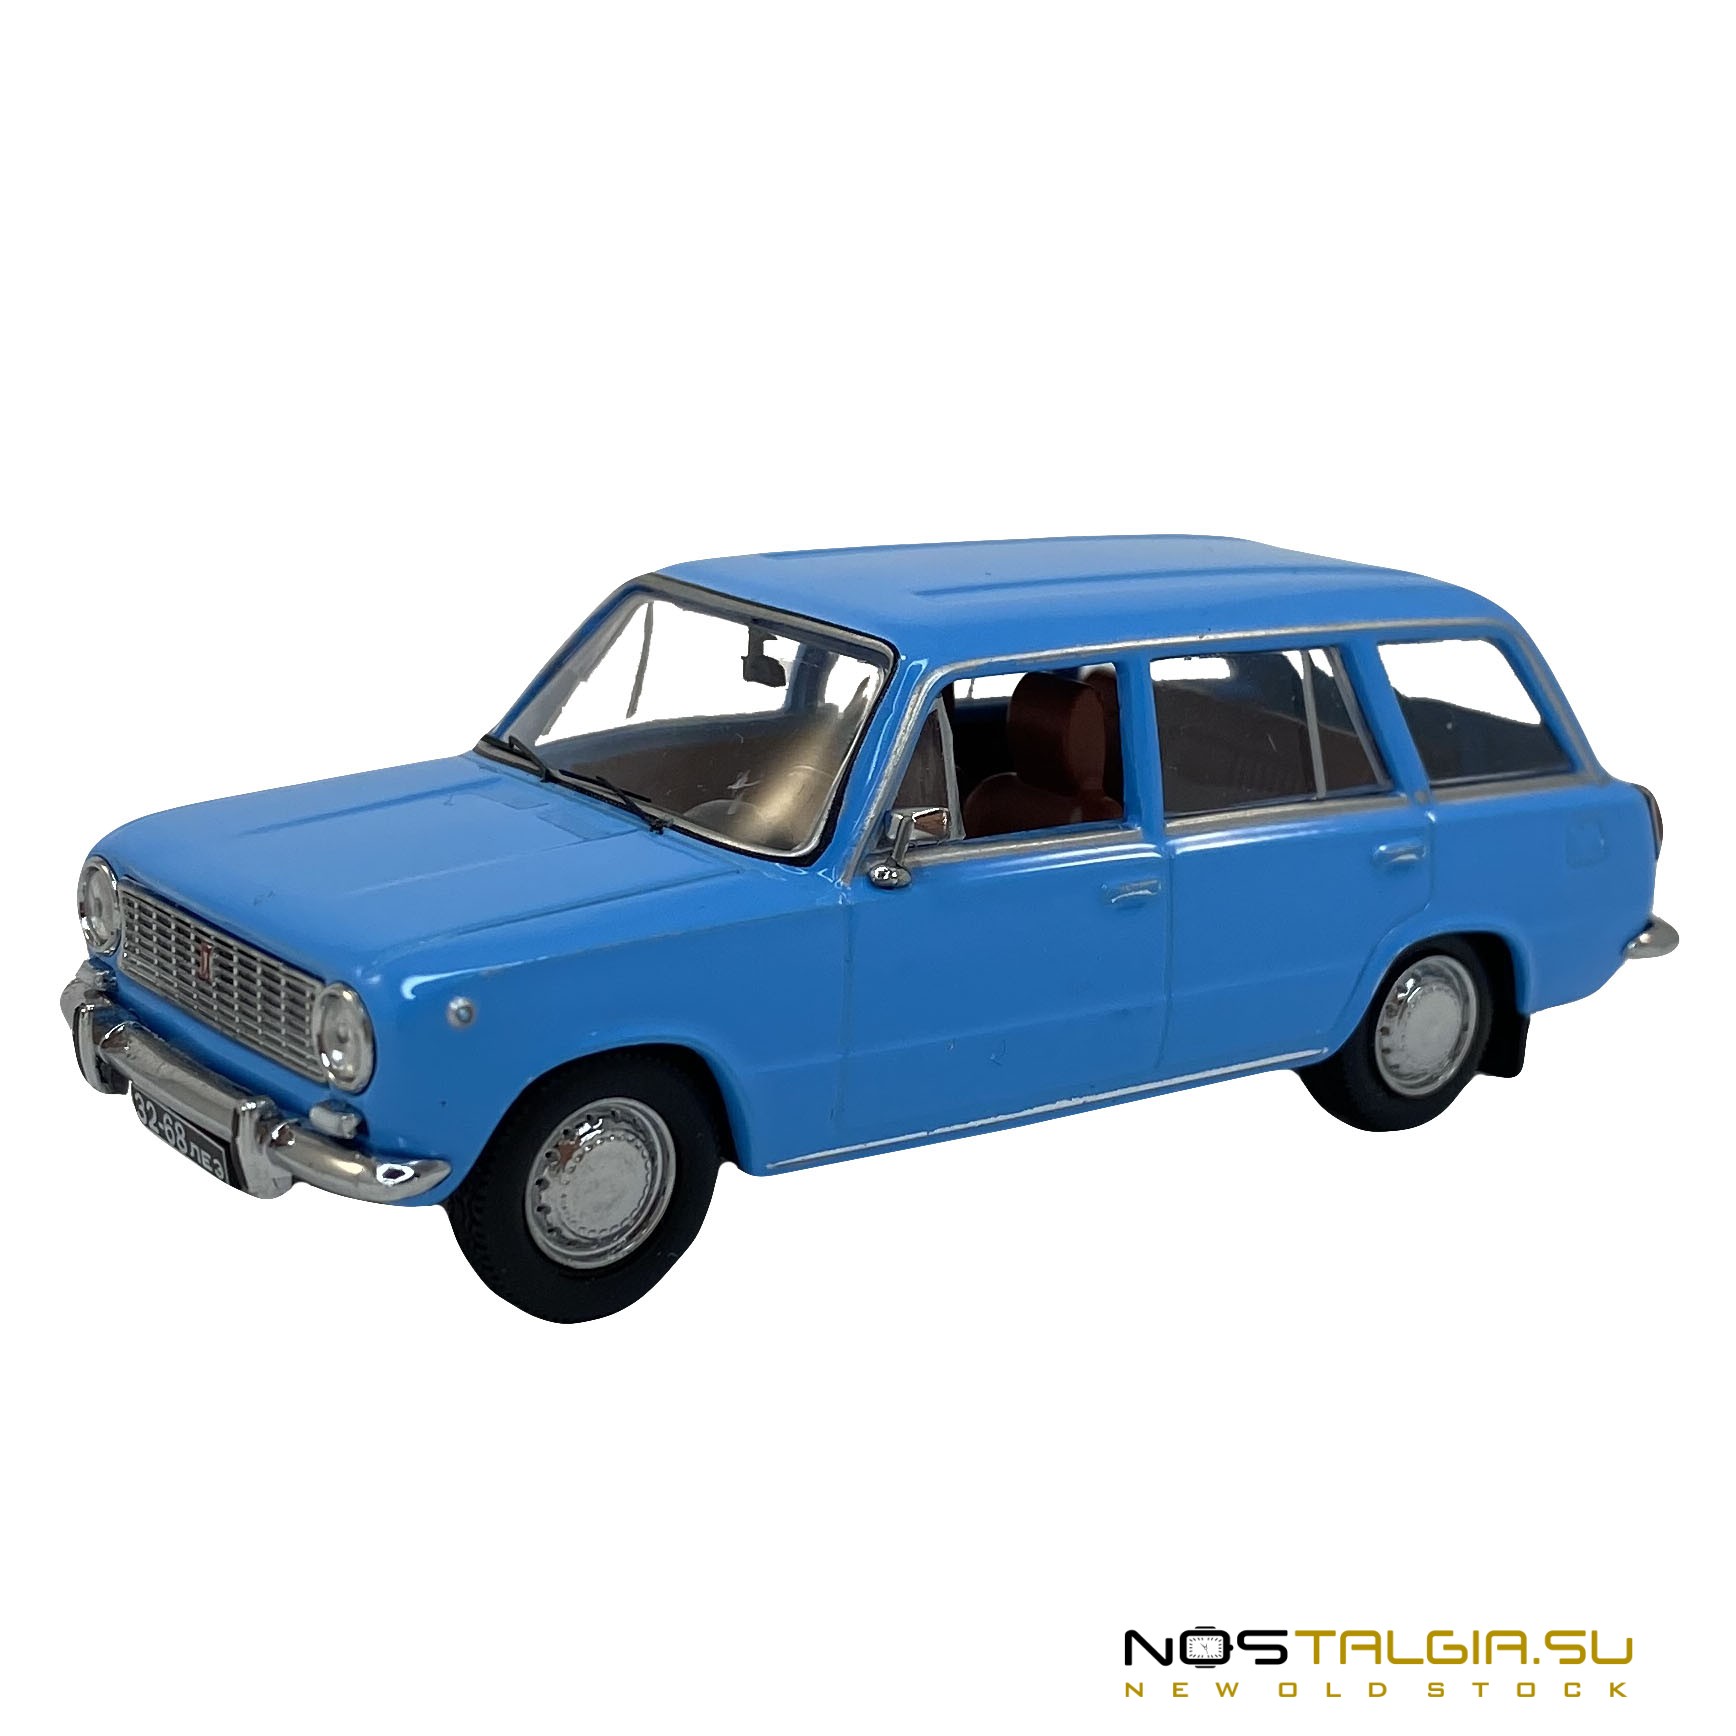 Коллекционная модель ВАЗ-2101 "Жигули", масштаб 1:43, идеальное состояние, новая с хранения